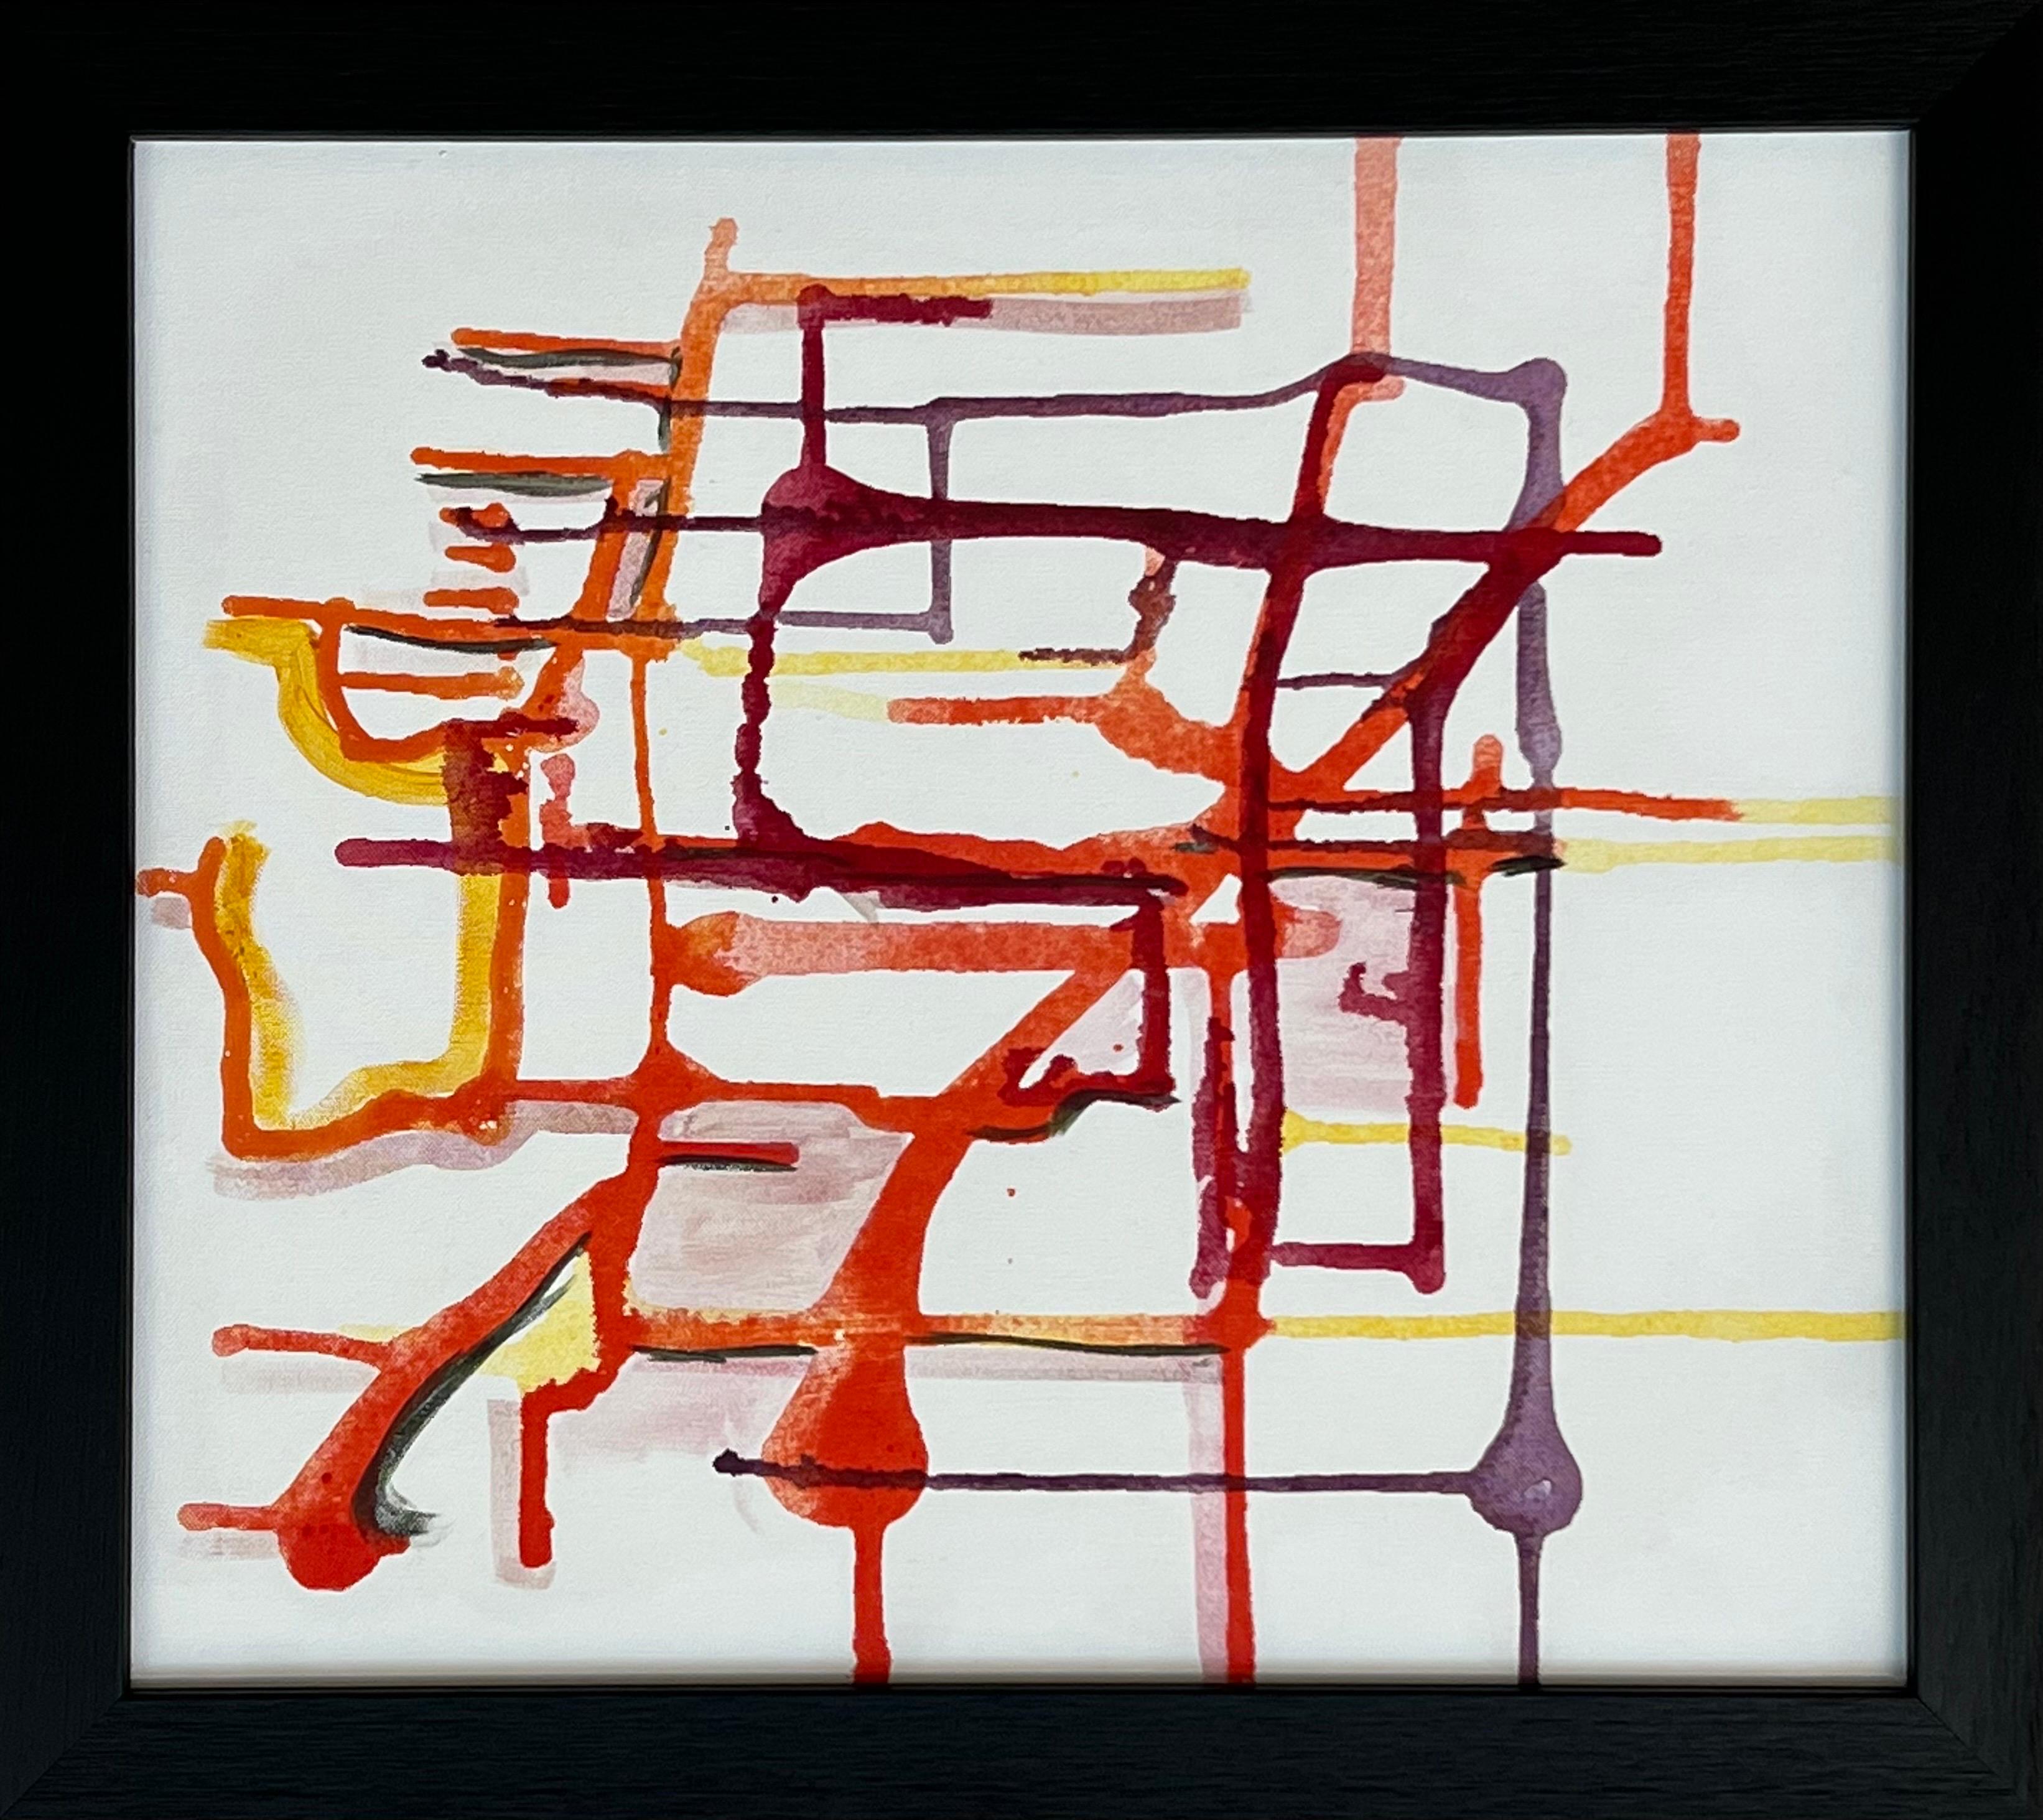 Ein seltenes, experimentelles, abstraktes Kunstwerk der führenden britischen Künstlerin Angela Wakefield aus den Farben Lila, Orange und Gelb auf weißem Hintergrund. 

Kunst misst 20 x 18 Zoll 
Rahmen misst 24 x 22 Zoll 

Ein Originalgemälde. Acryl